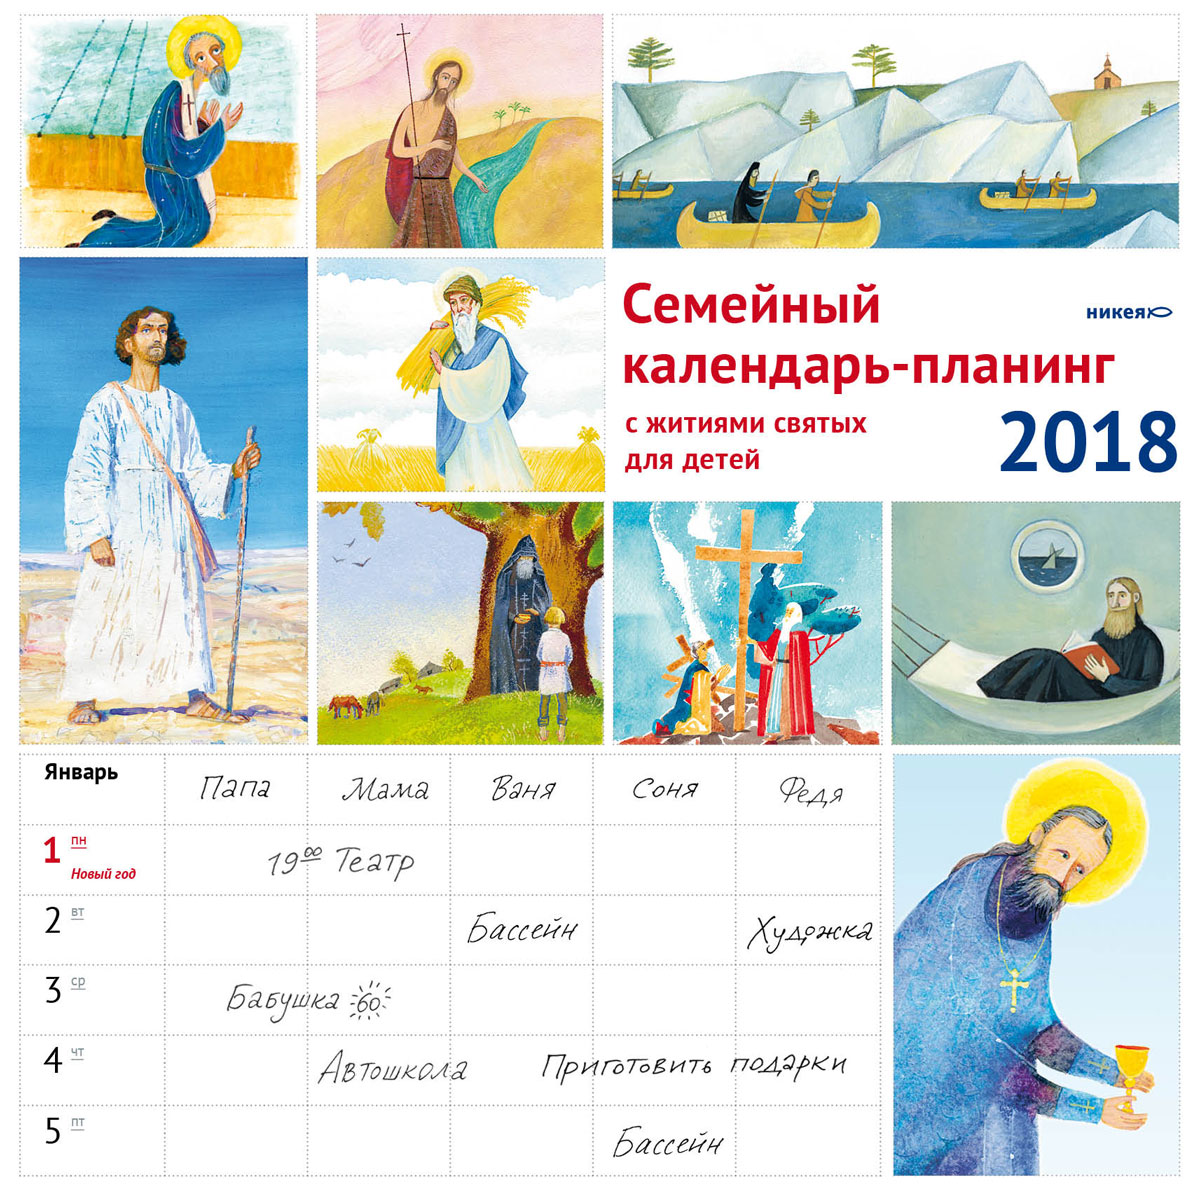 Семейный календарь-планинг 2018 (на скрепке). Жития святых для детей